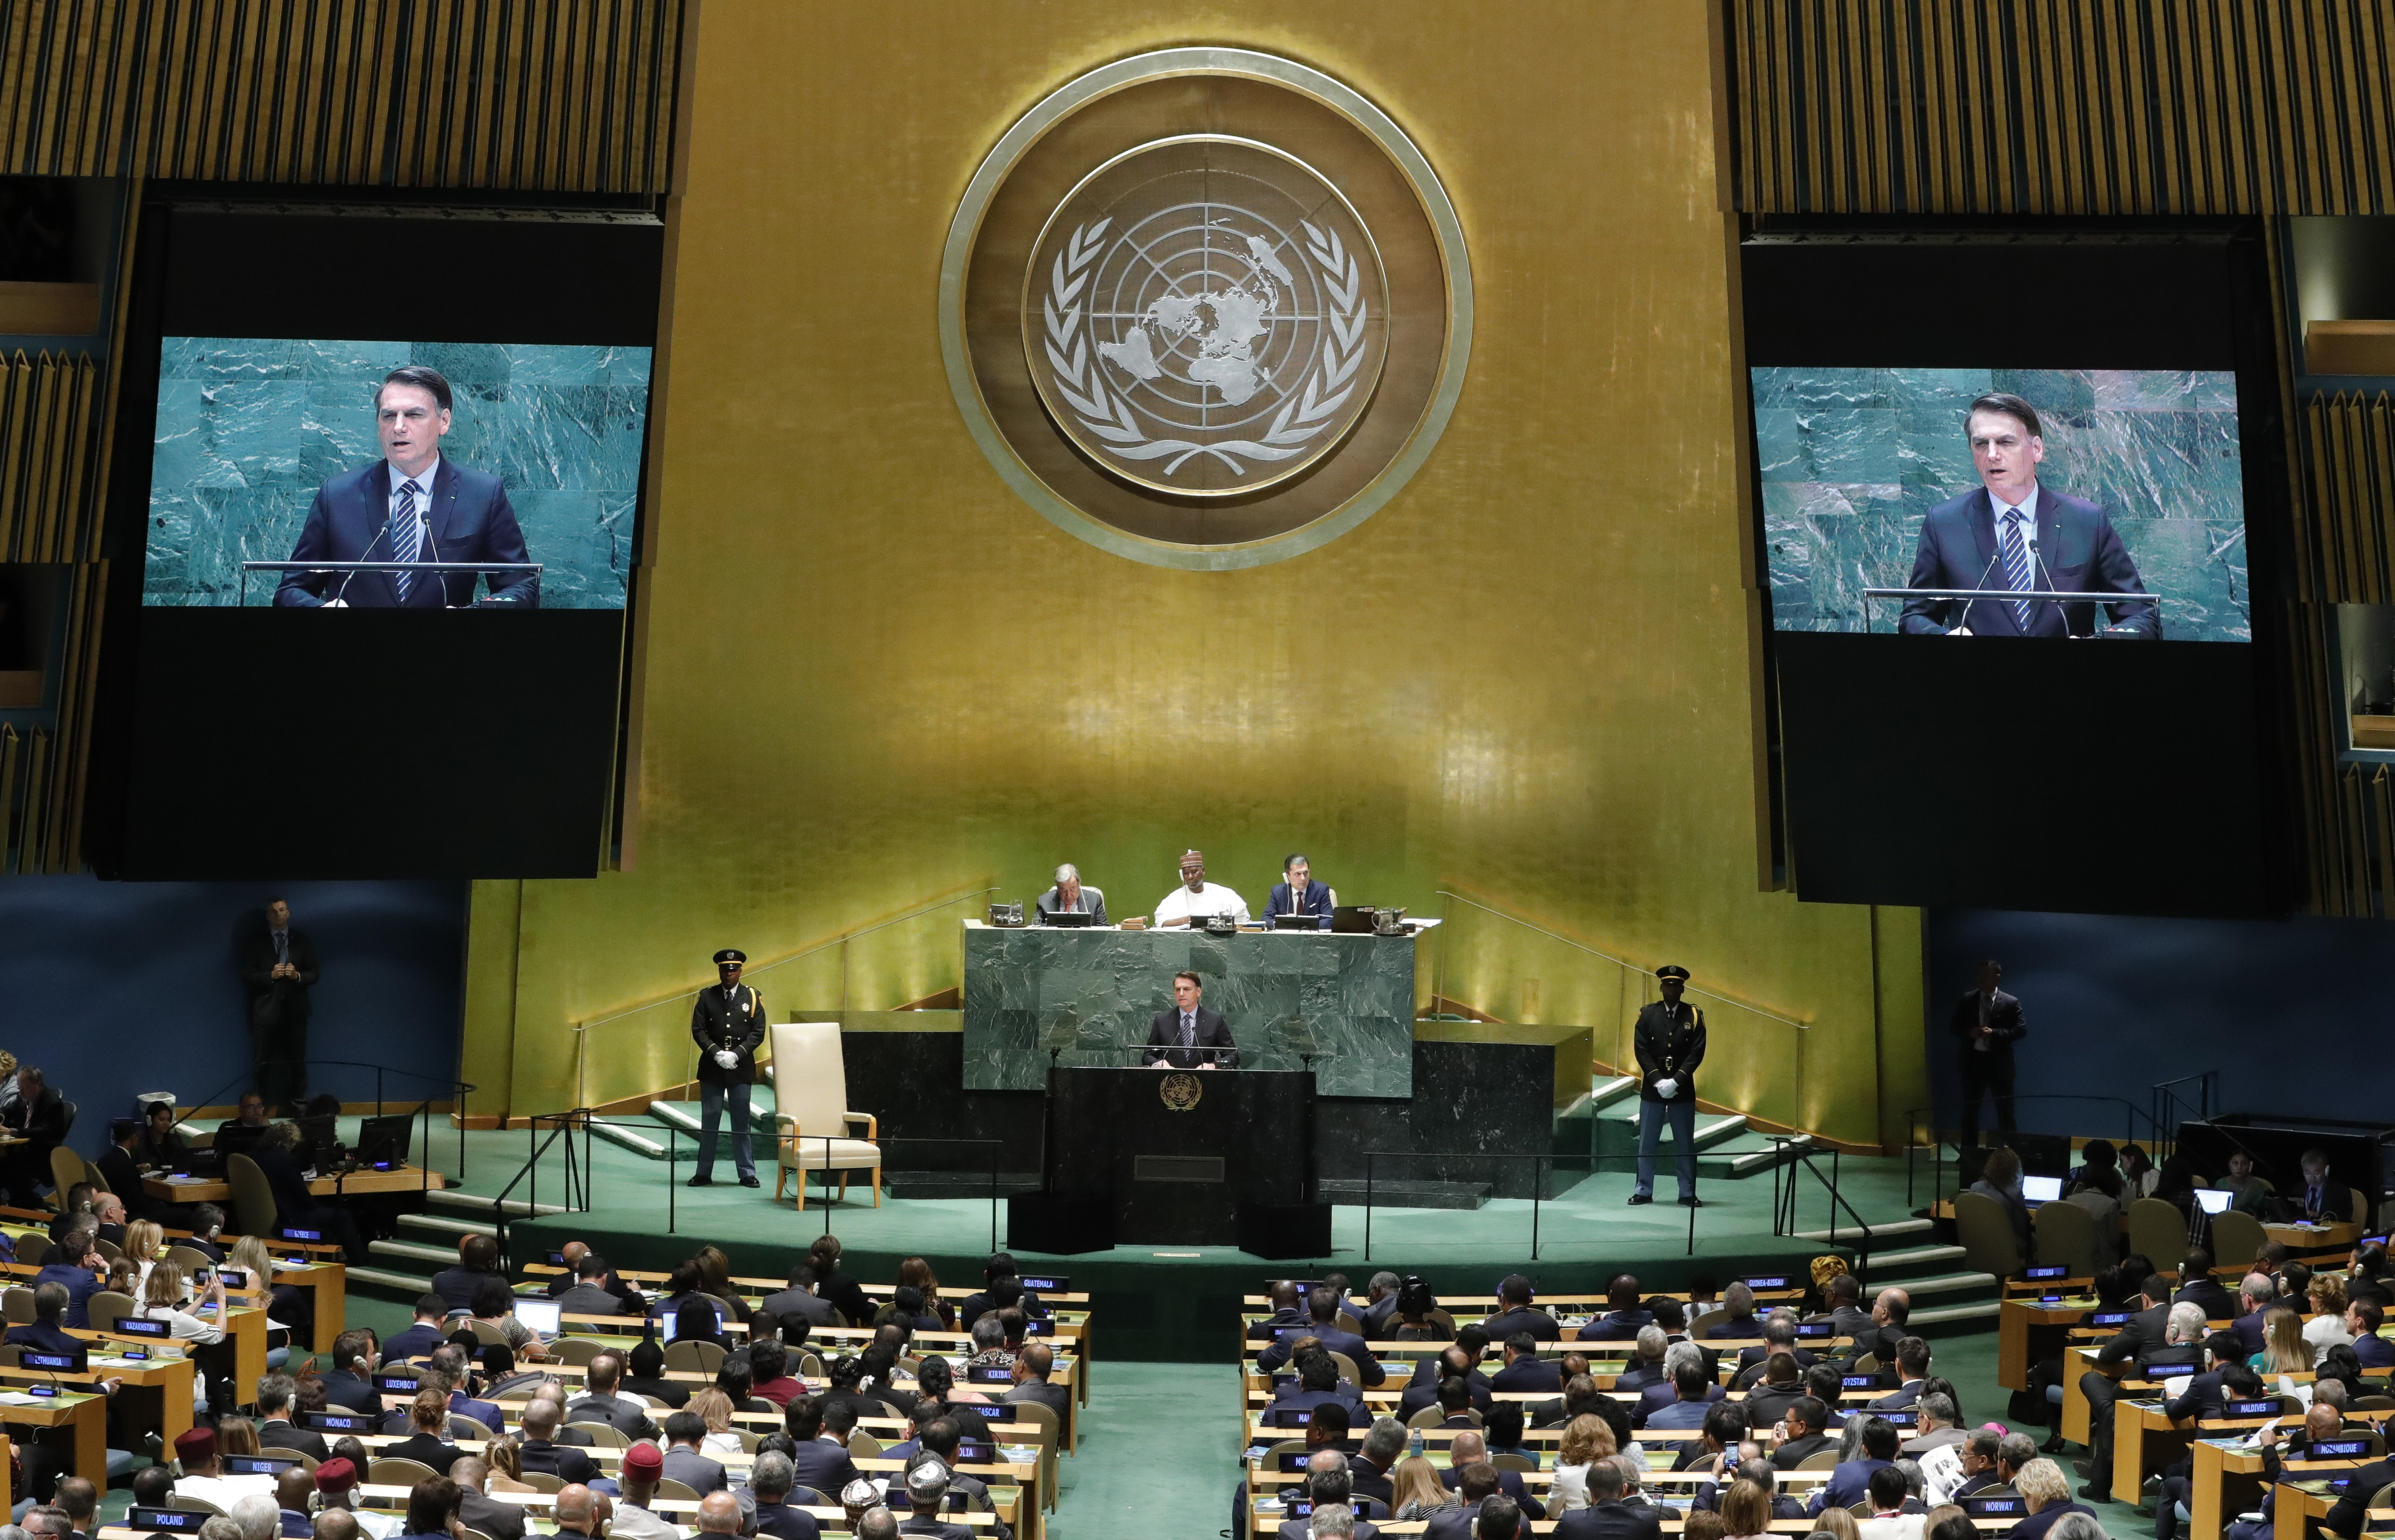 Оон общество. Зал Генеральной Ассамблеи ООН. Зал заседания Генеральной Ассамблеи ООН. Генеральная Ассамблея ООН Нью-Йорк. Генеральная Ассамблея ООН 1995.